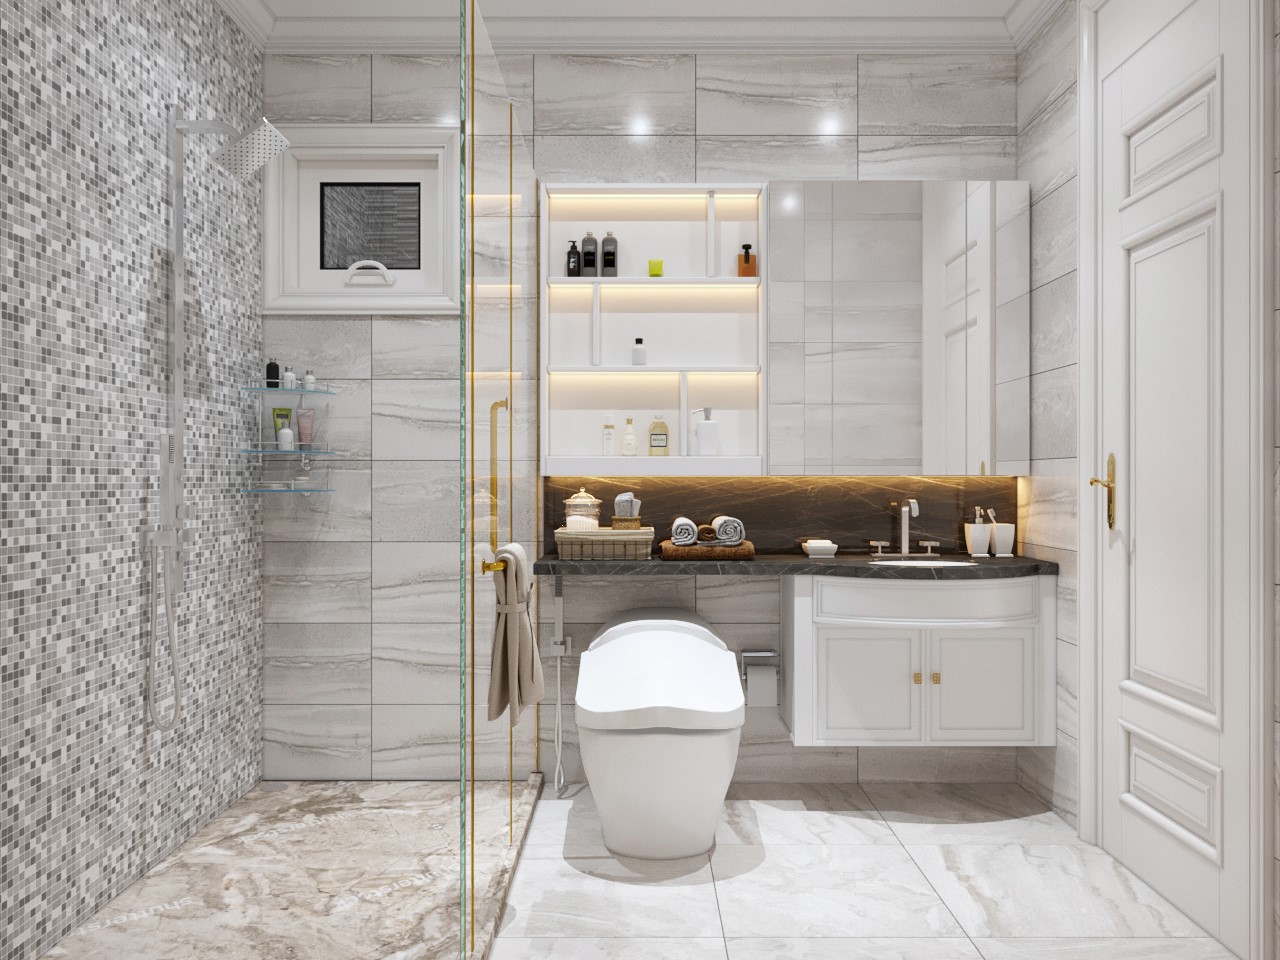 Phòng tắm - vệ sinh nhà ống 3 tầng 1 tum được phân tách làm 2 khu vực chức năng bởi vách kính trong suốt, đảm bảo sự khô thoáng, sạch sẽ.